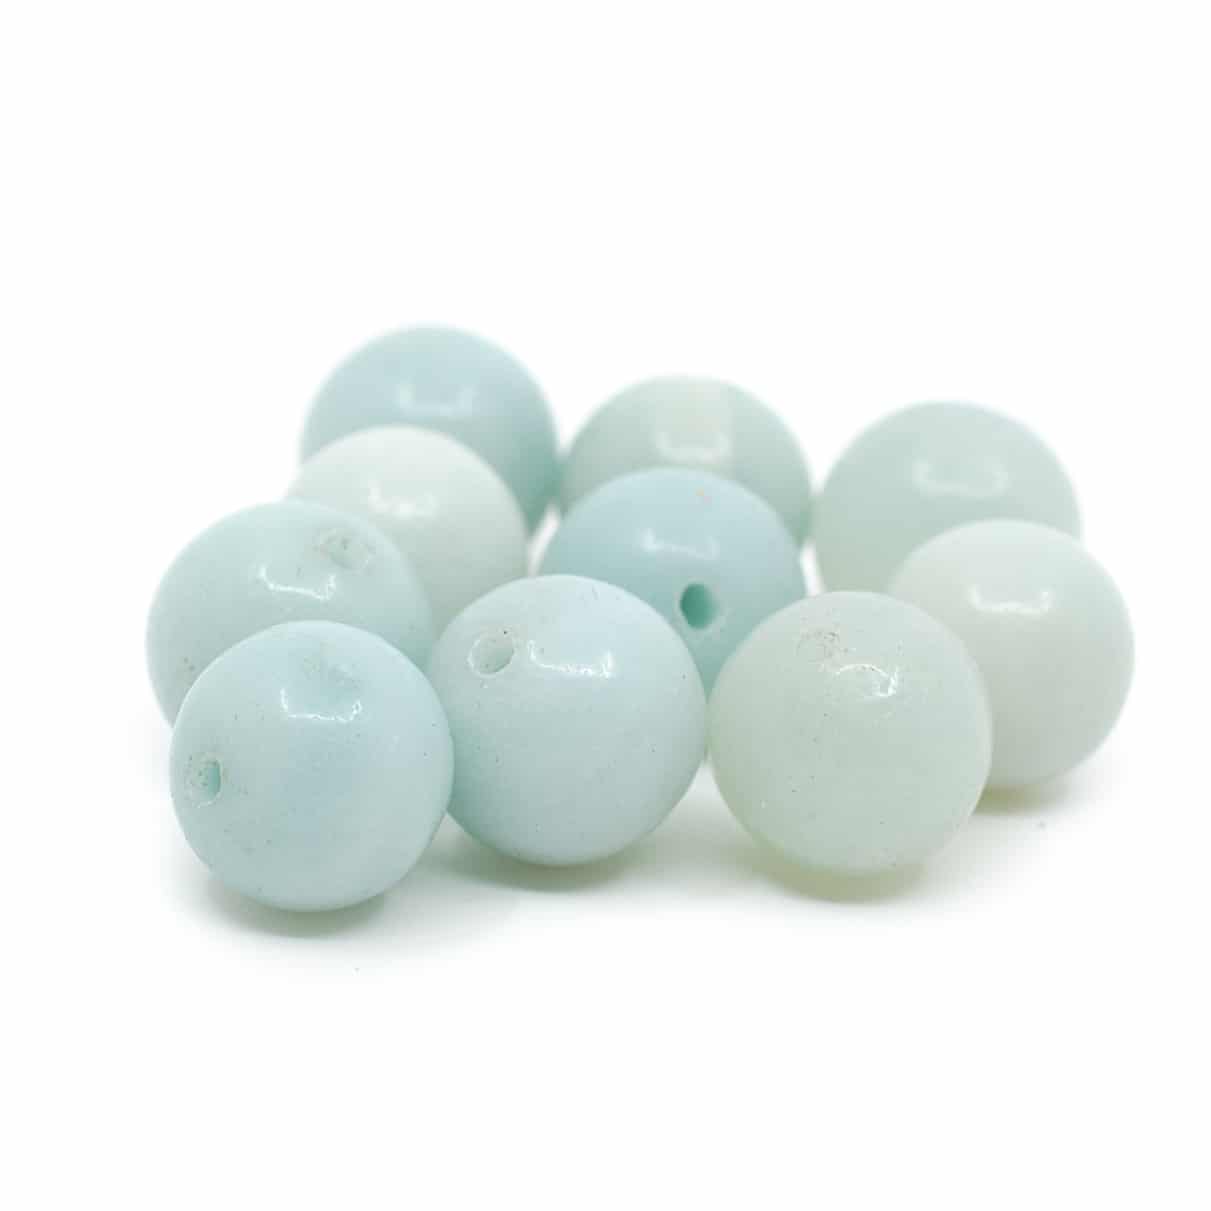 Edelstein Lose Perlen Amazonit - 10 St-ck (10 mm)